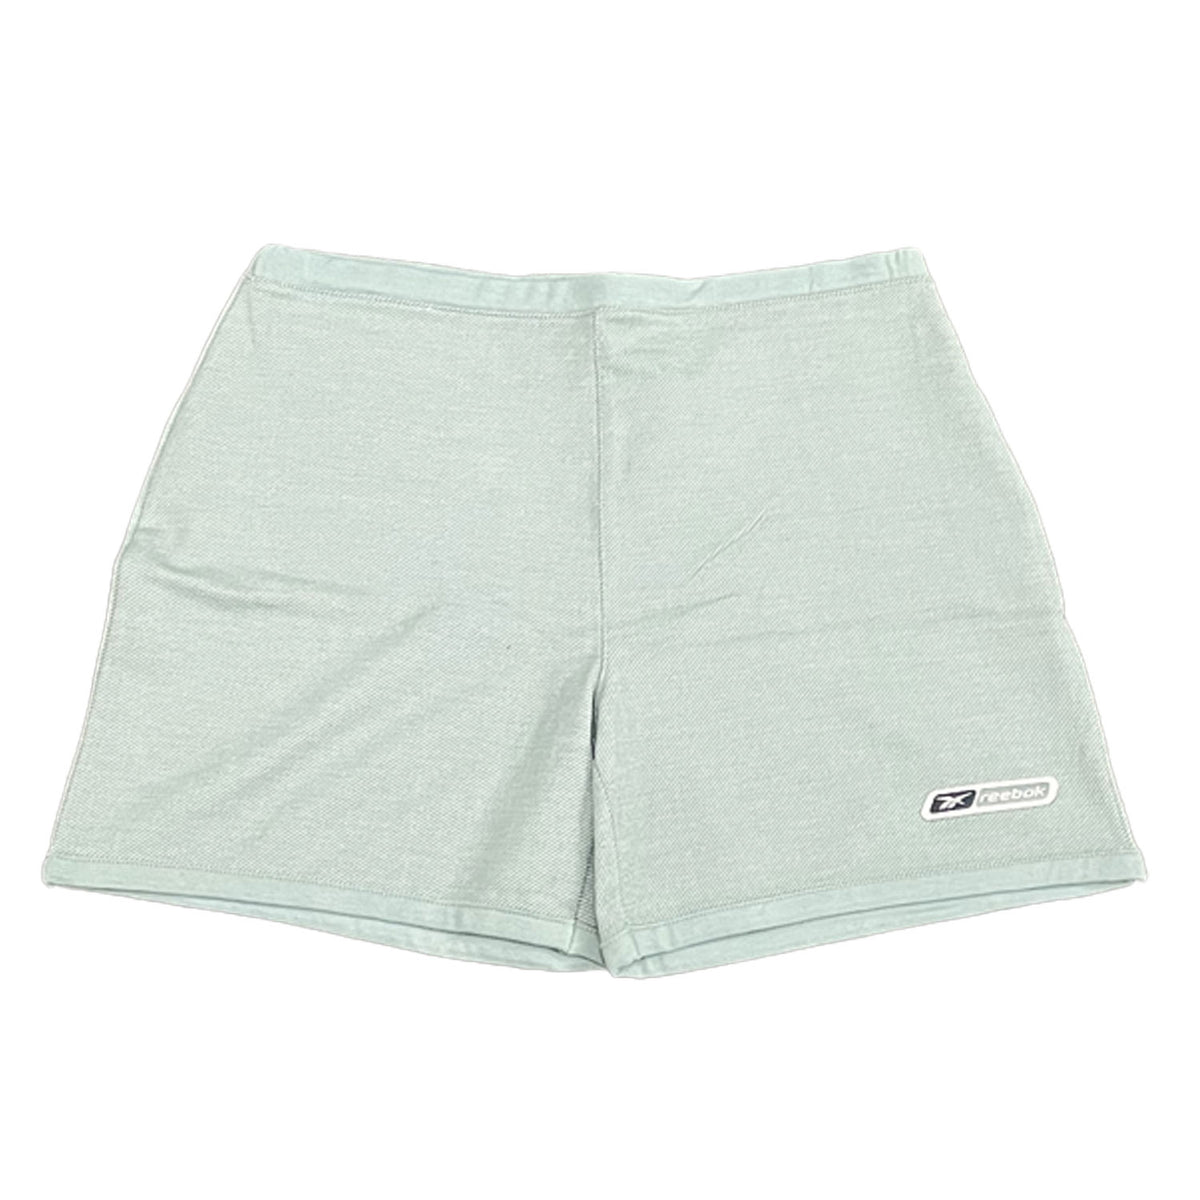 Reebok Womens Small Logo Shorts - Green - UK Size 12